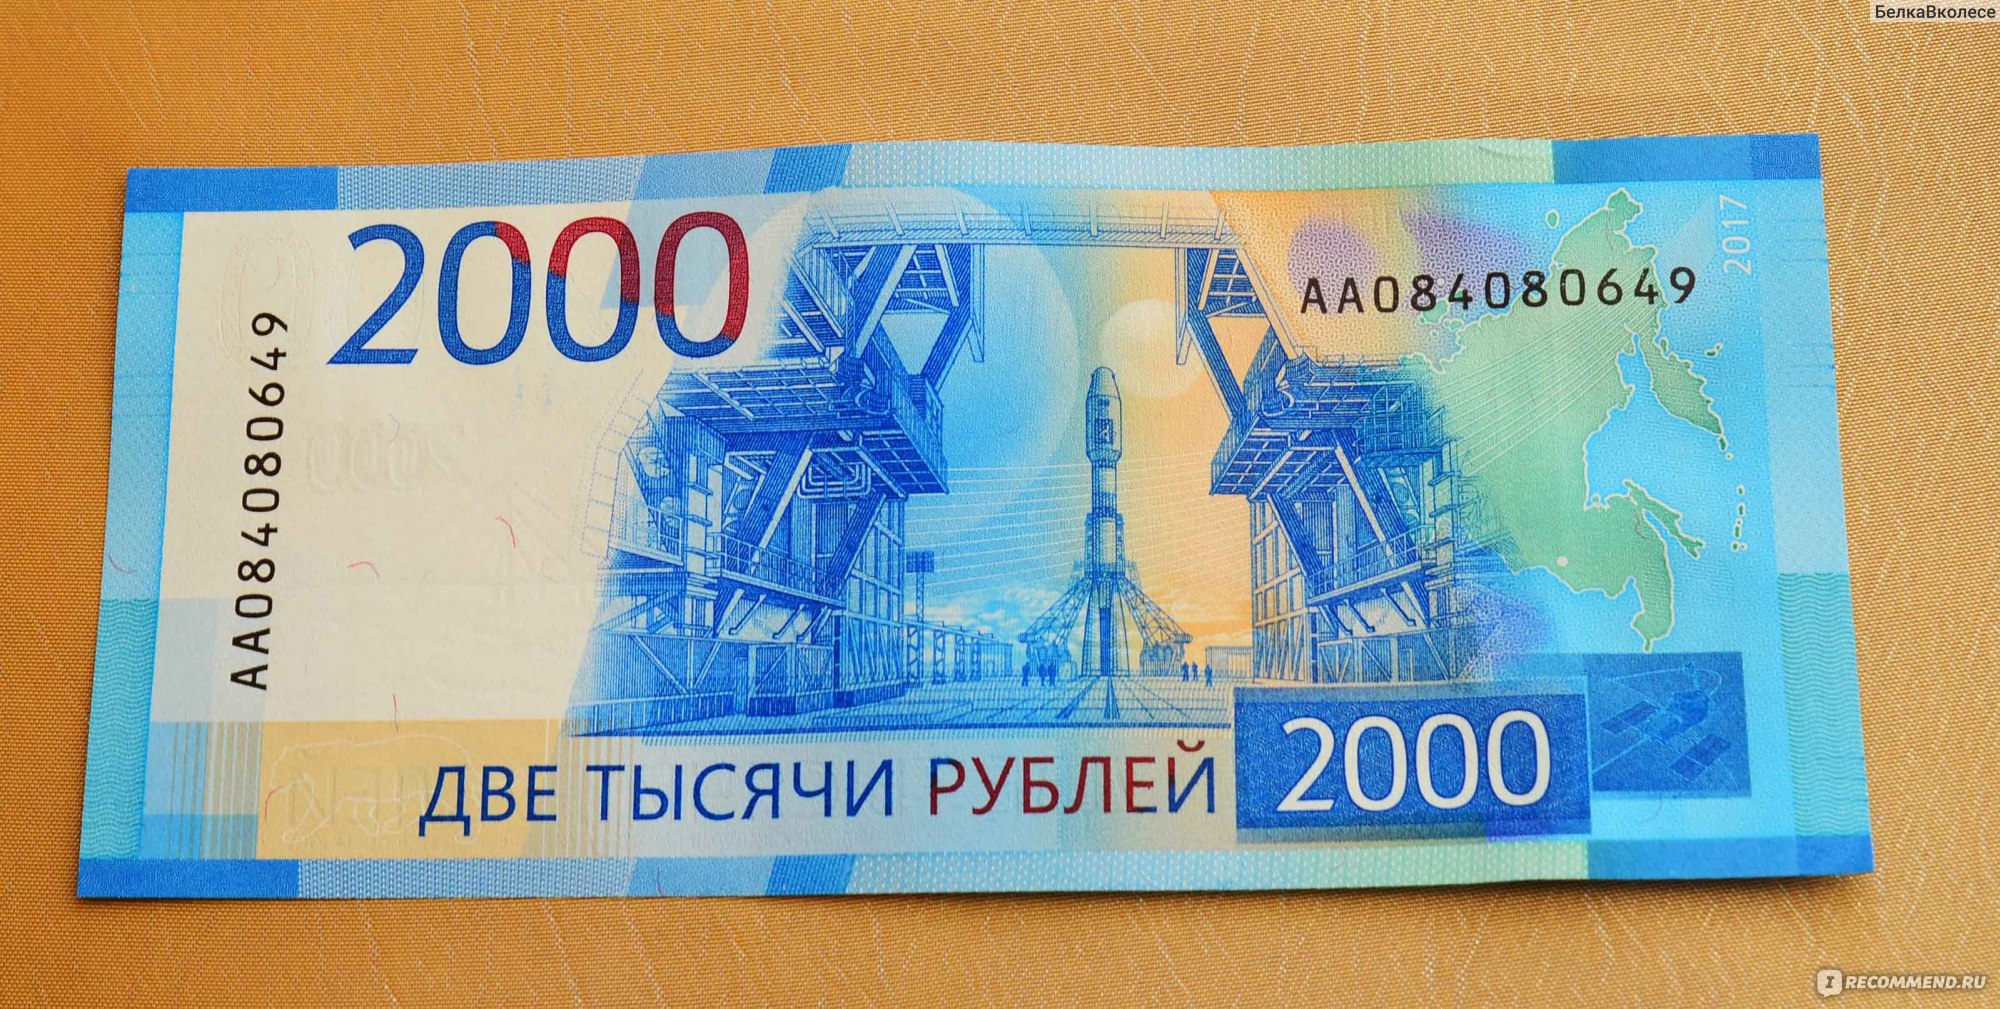 Дома два две тысячи десятый год. Купюра 2000 рублей. Банкнота 200 и 2000 рублей. 2000 Рублей бумажка. 200 Рублей и 2000 рублей.